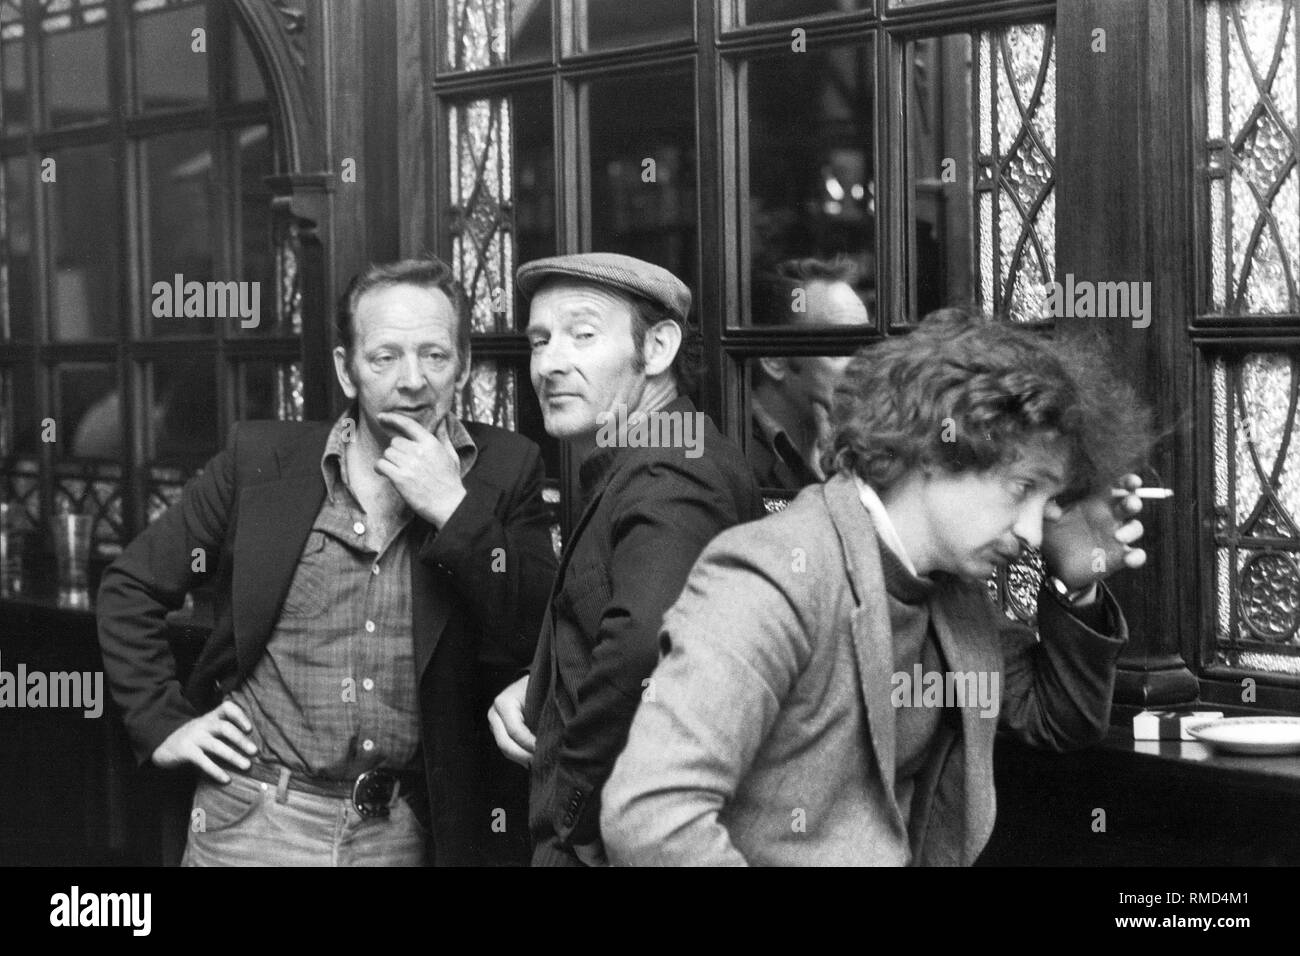 Three Irishmen in a pub. Stock Photo